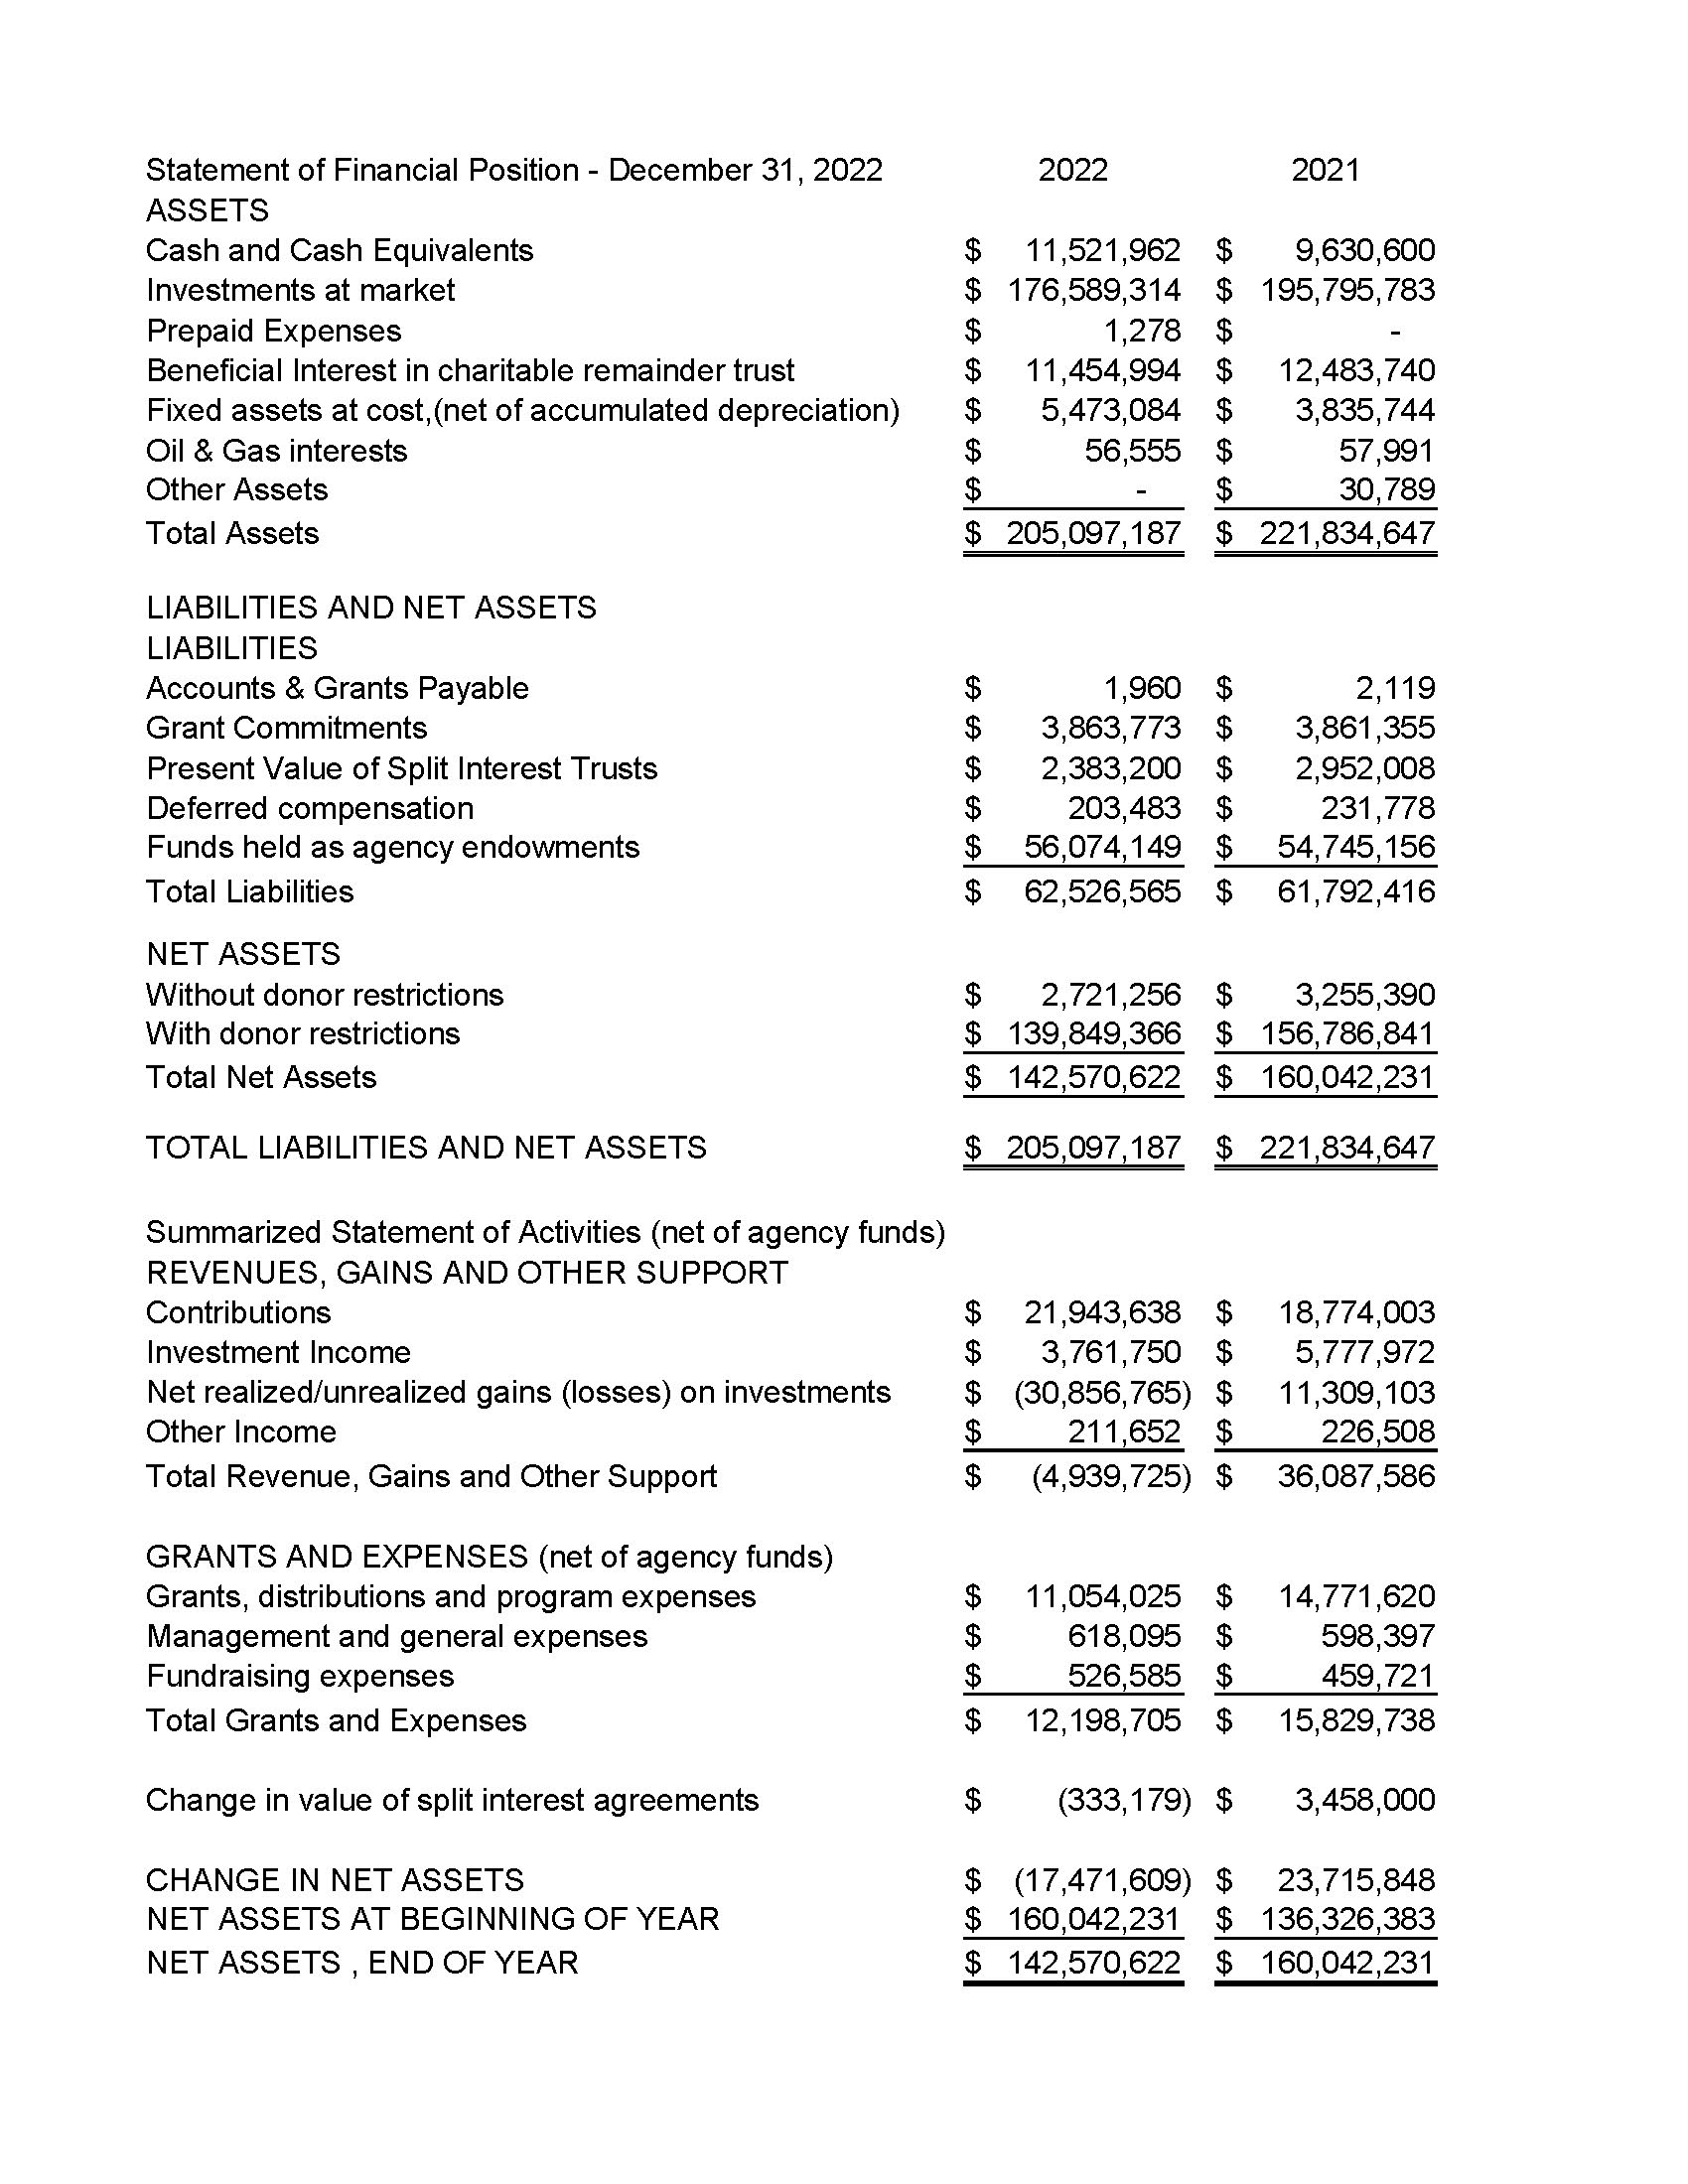 2022 SAAF Financials